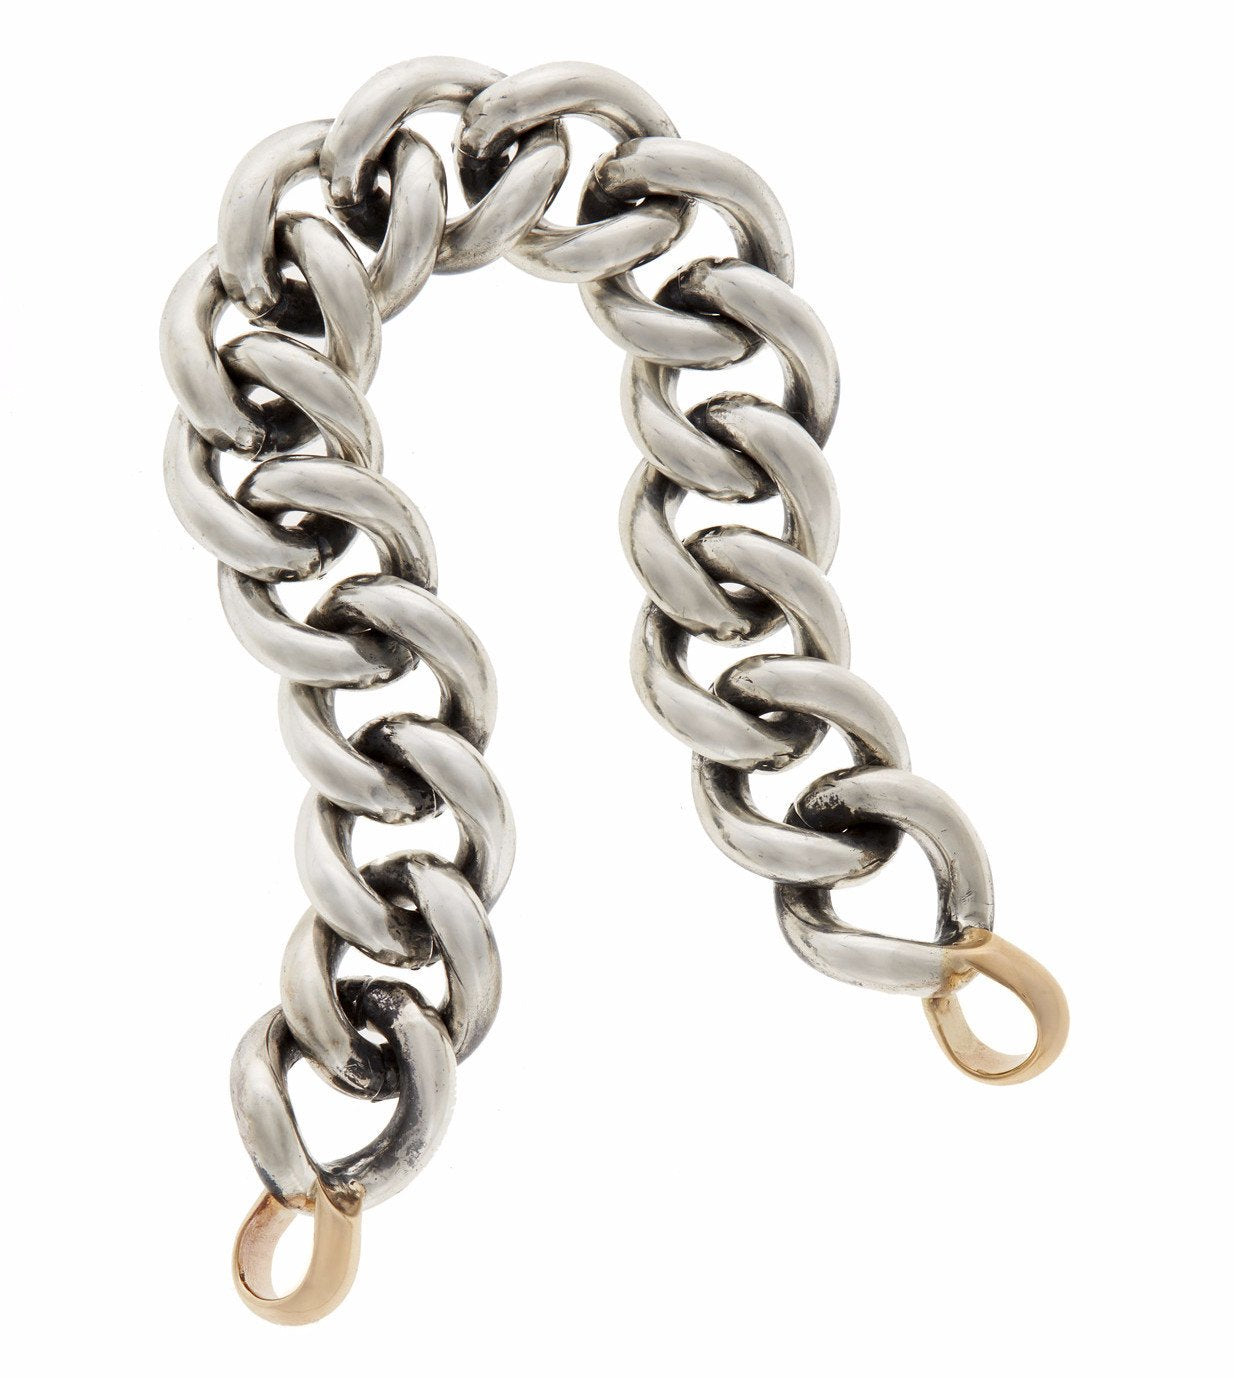 Single Satellite Chain Bracelet in Sterling Silver | Kendra Scott